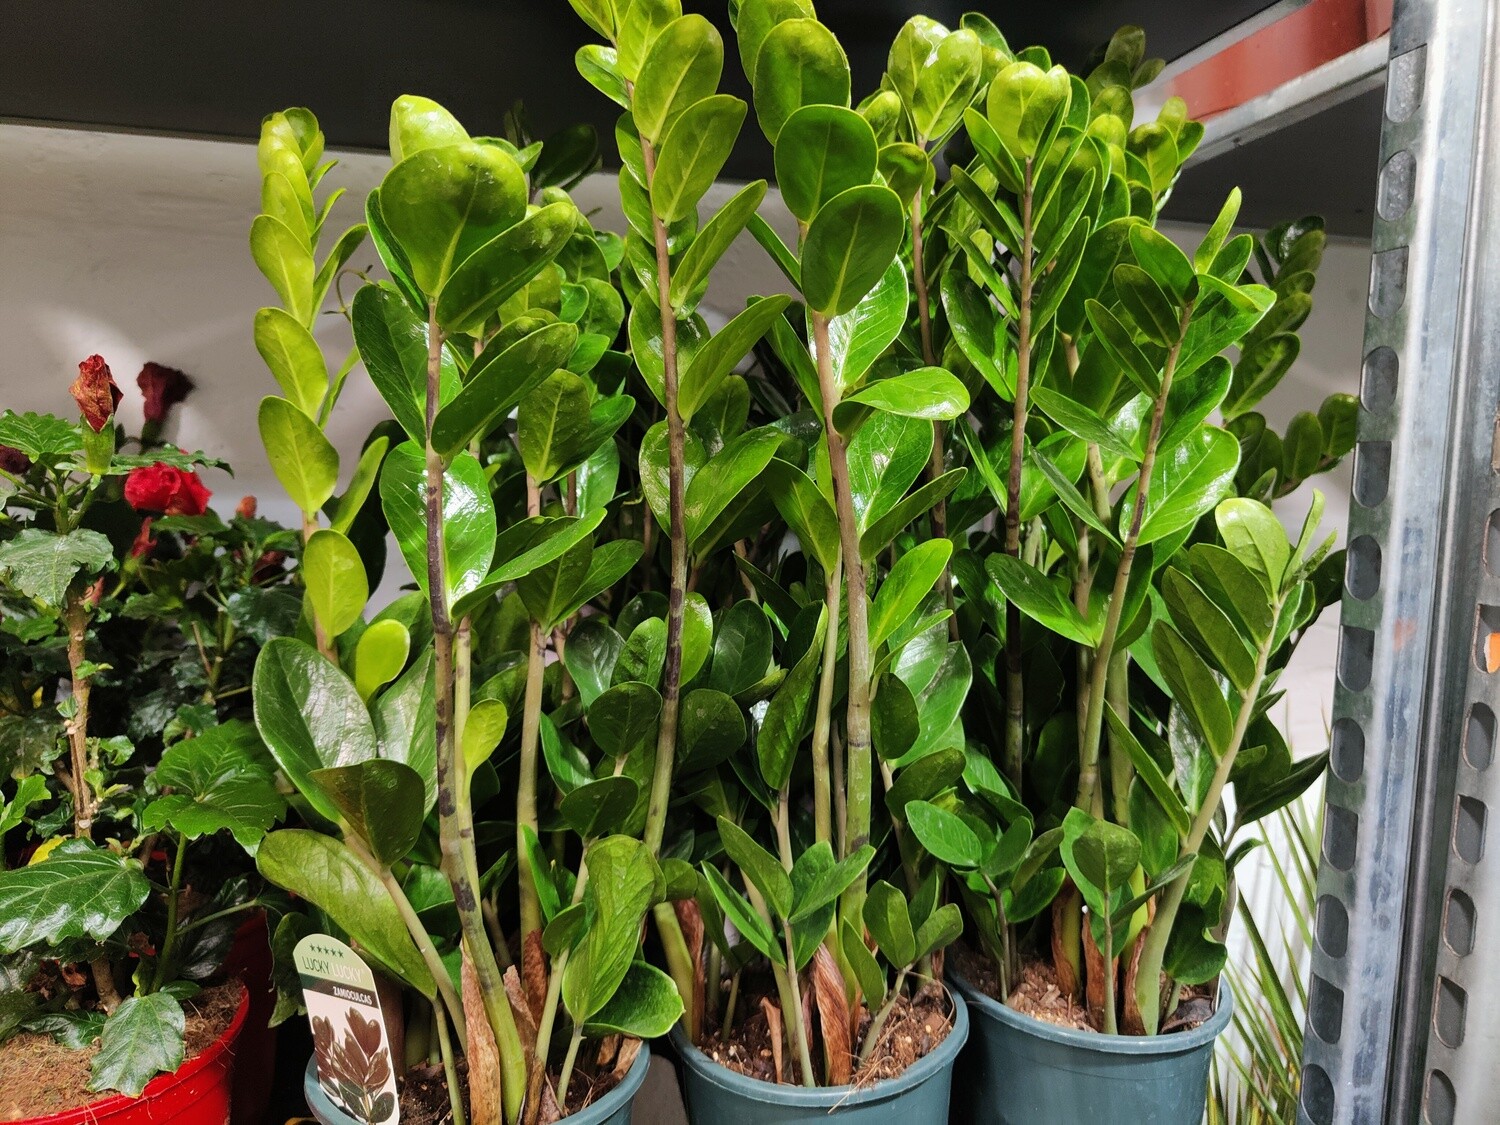 "AmaPlant Zamioculca" resistente como pocas e ideal para decorar cualquier espacio del hogar con sus hojas verdes brillantes 5L (todoterreno) - Interior o exterior con sombra